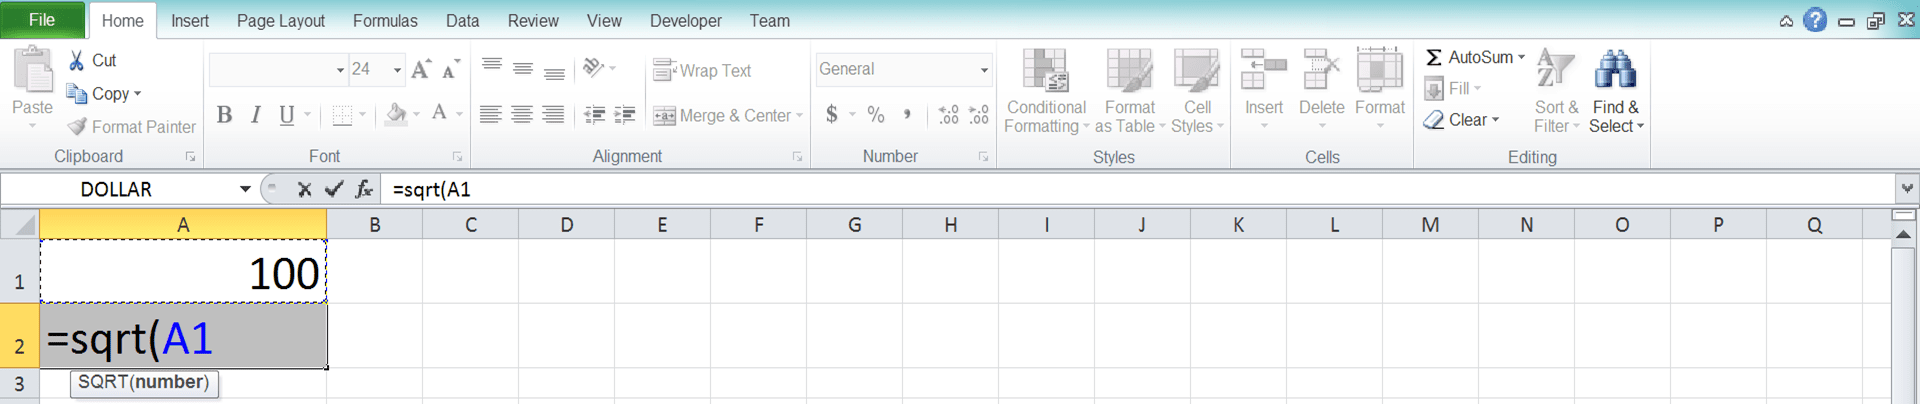 Cara Menghitung Akar di Excel Beserta Berbagai Rumus dan Fungsinya - Screenshot Langkah 3-3